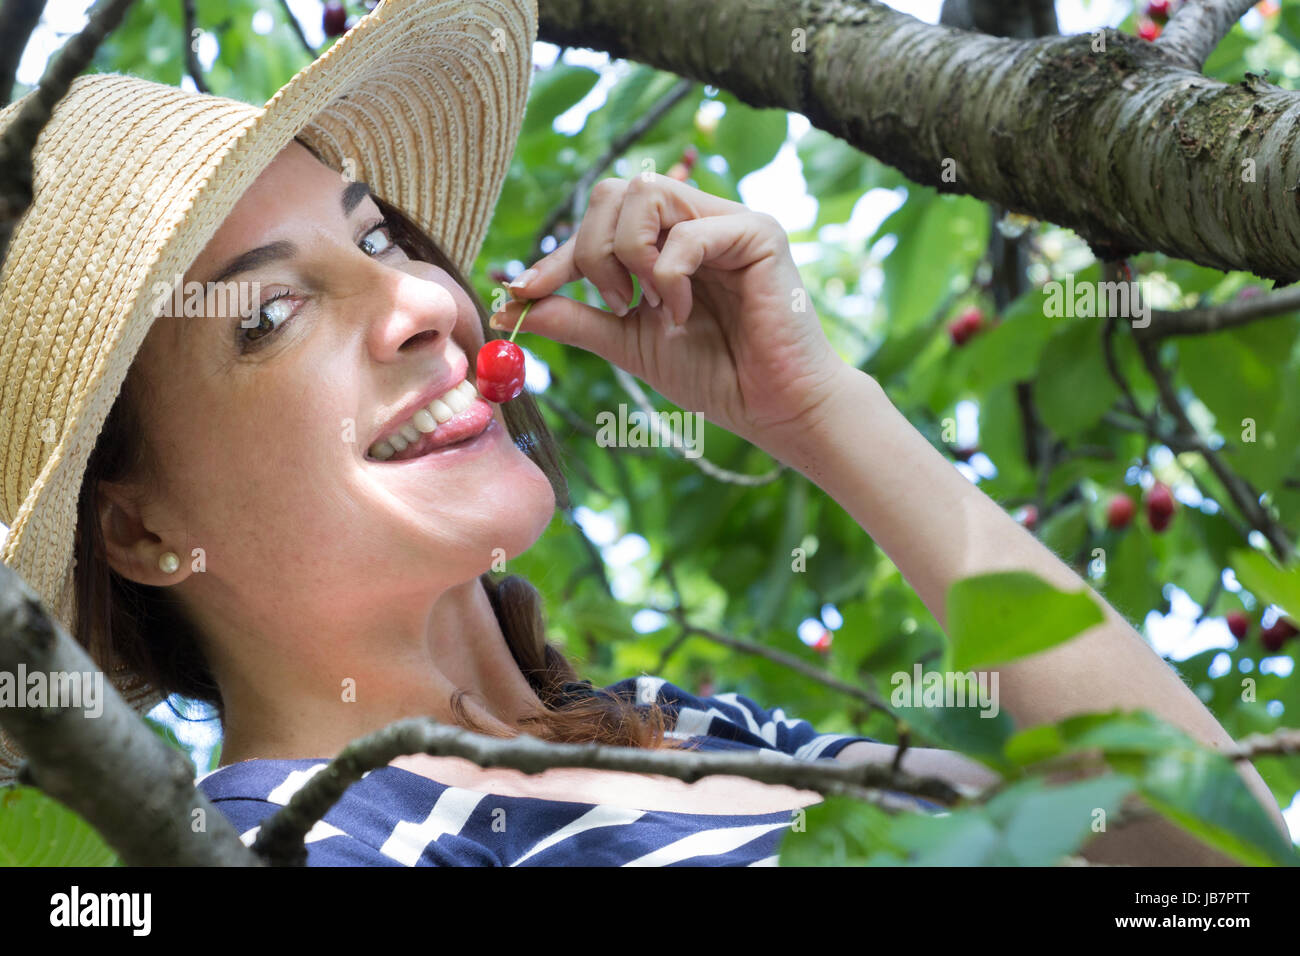 Une femme portant un chapeau sur un arbre de toucher une cerise avec sa langue. smiling, looking at camera. Banque D'Images